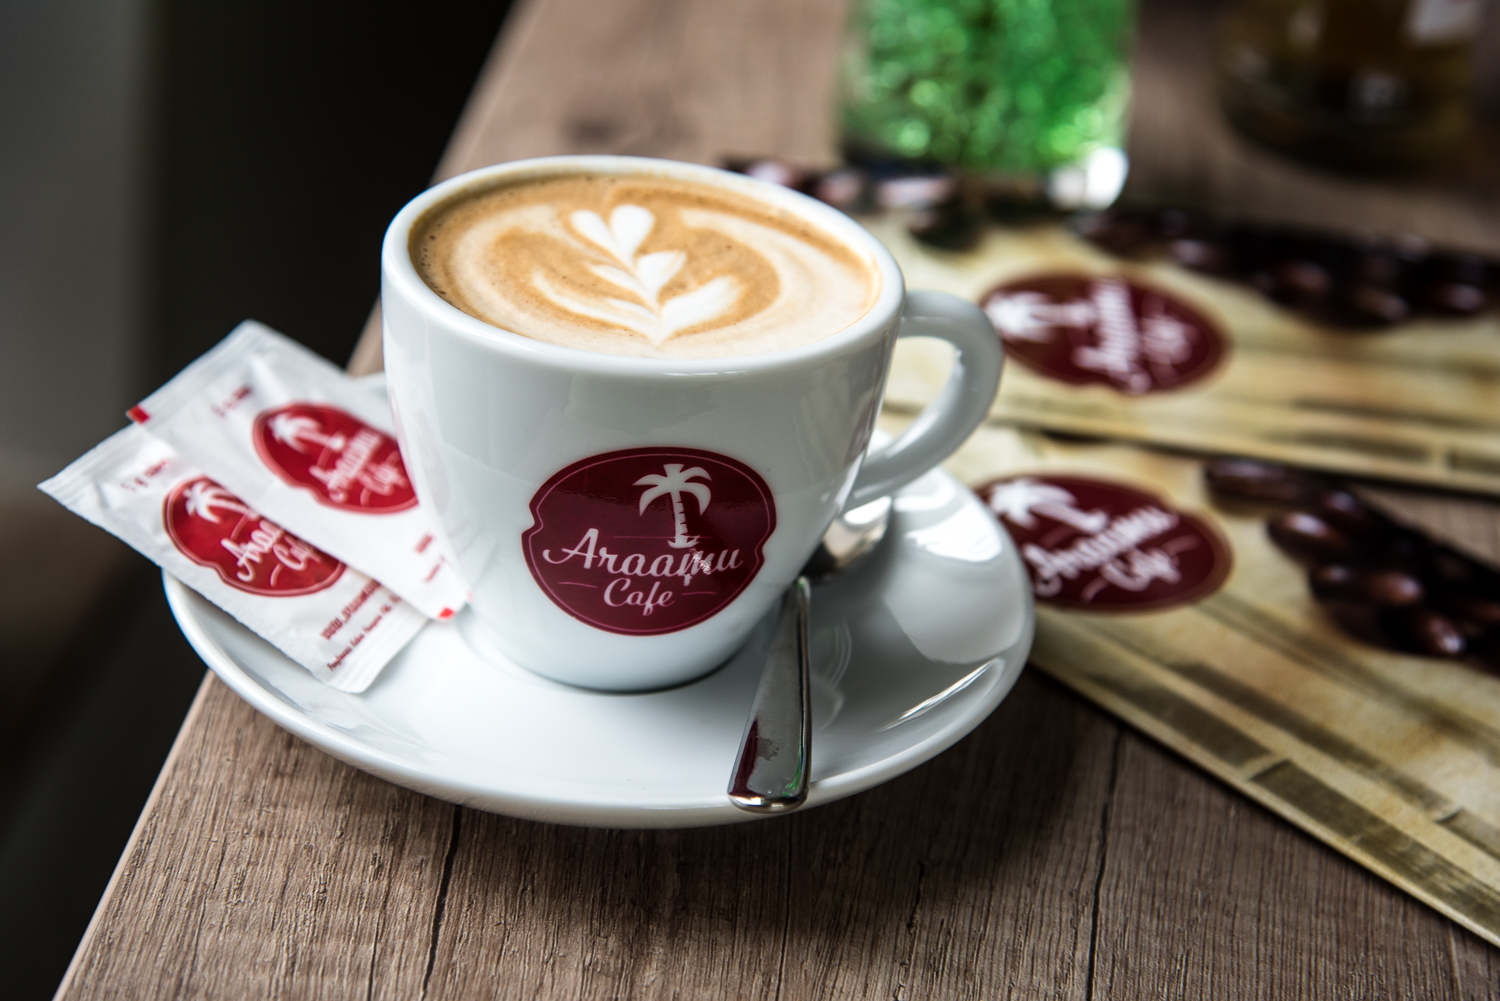 Kávékülönlegességek a III. kerületben – Araamu Cafe